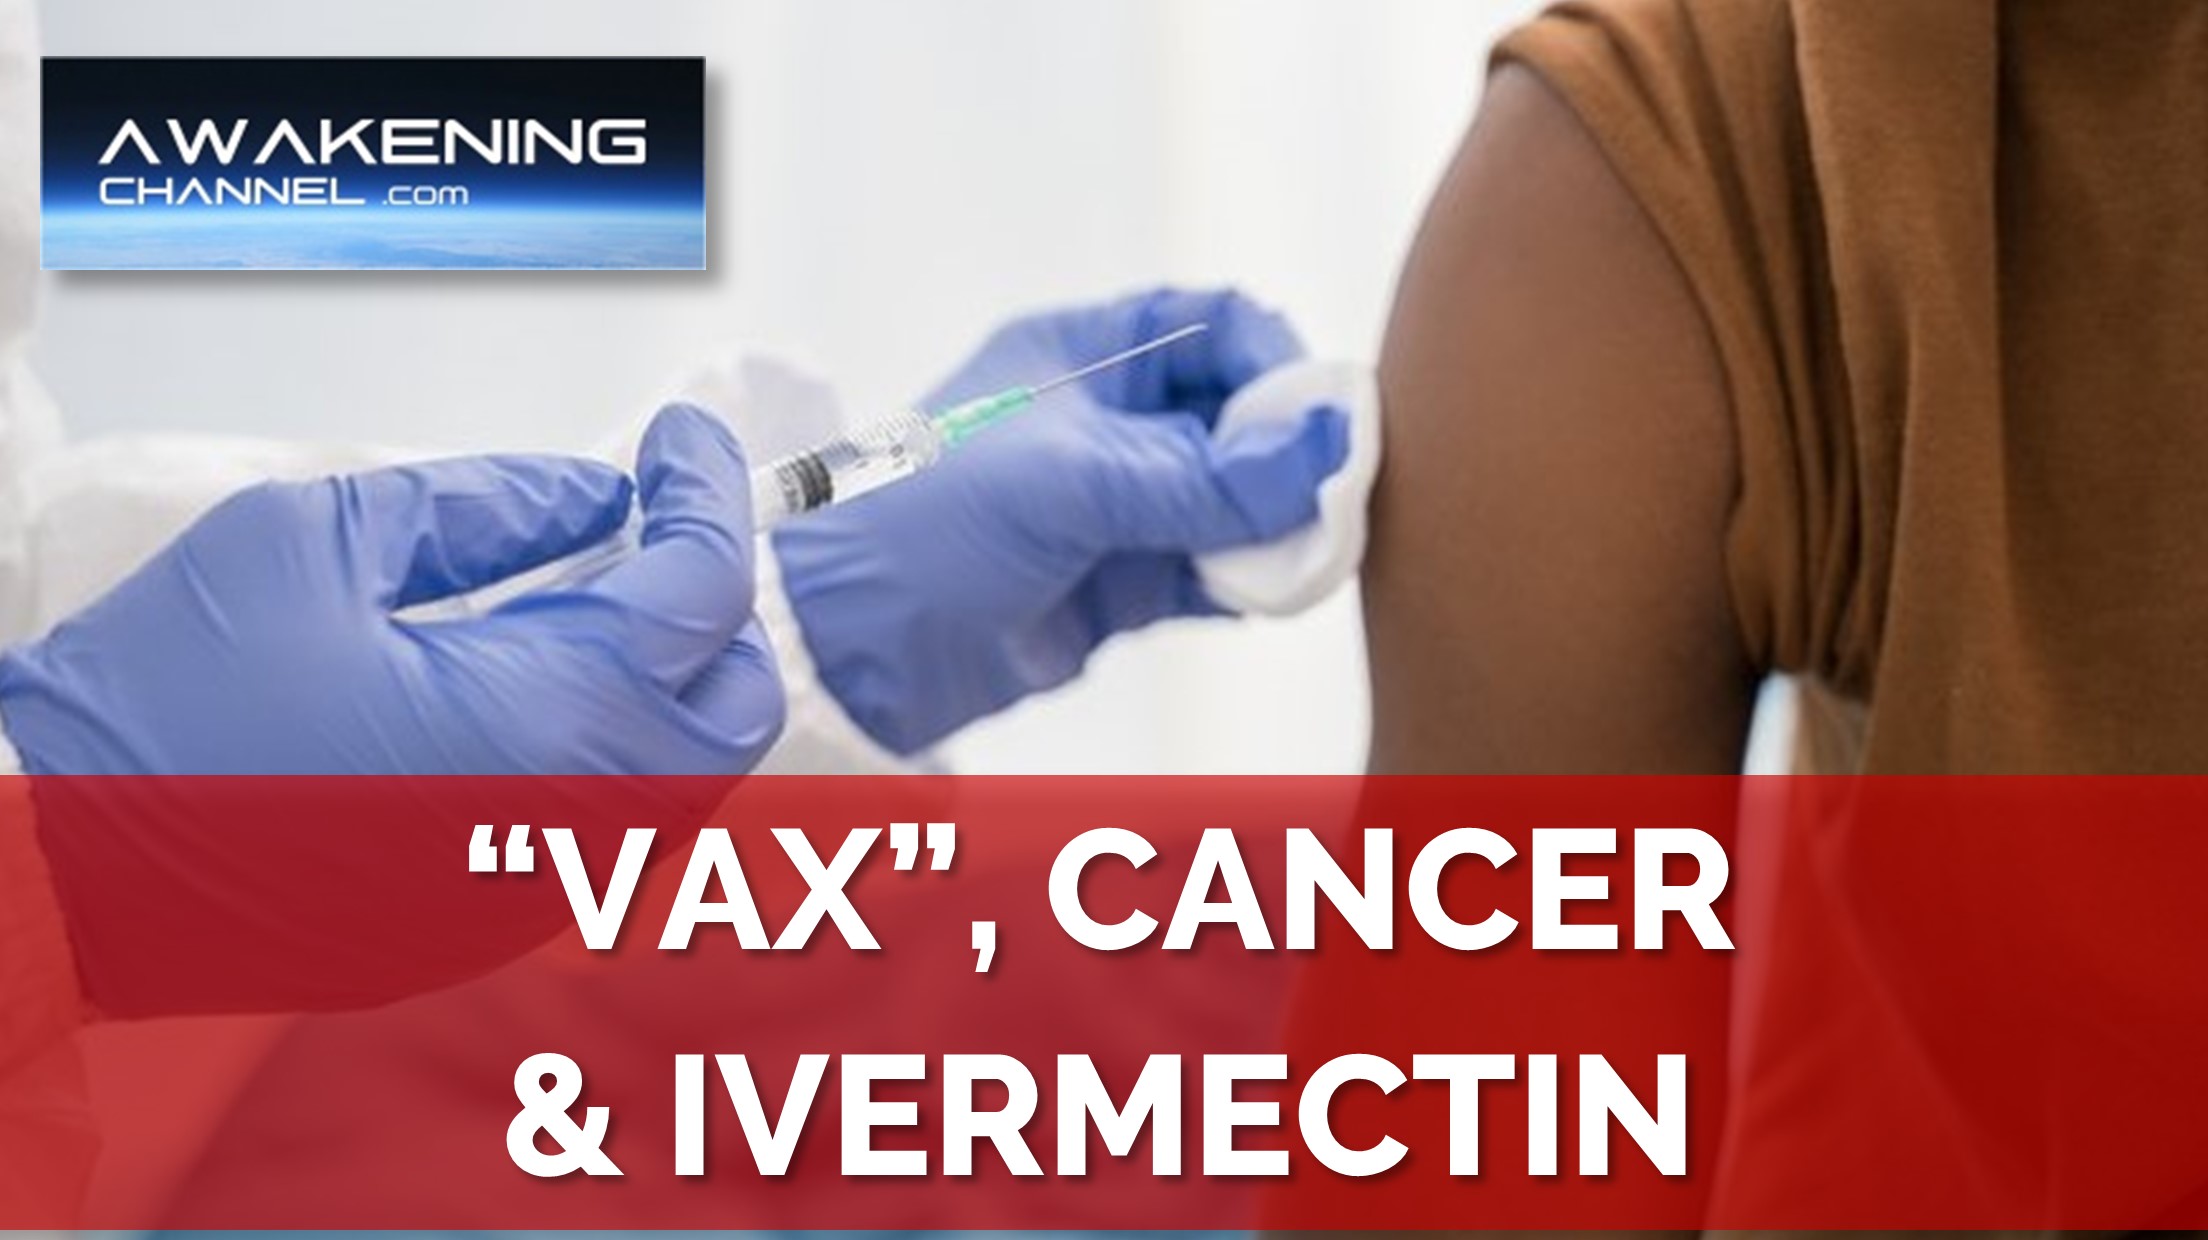 “Vax”, Cancer & Ivermectin